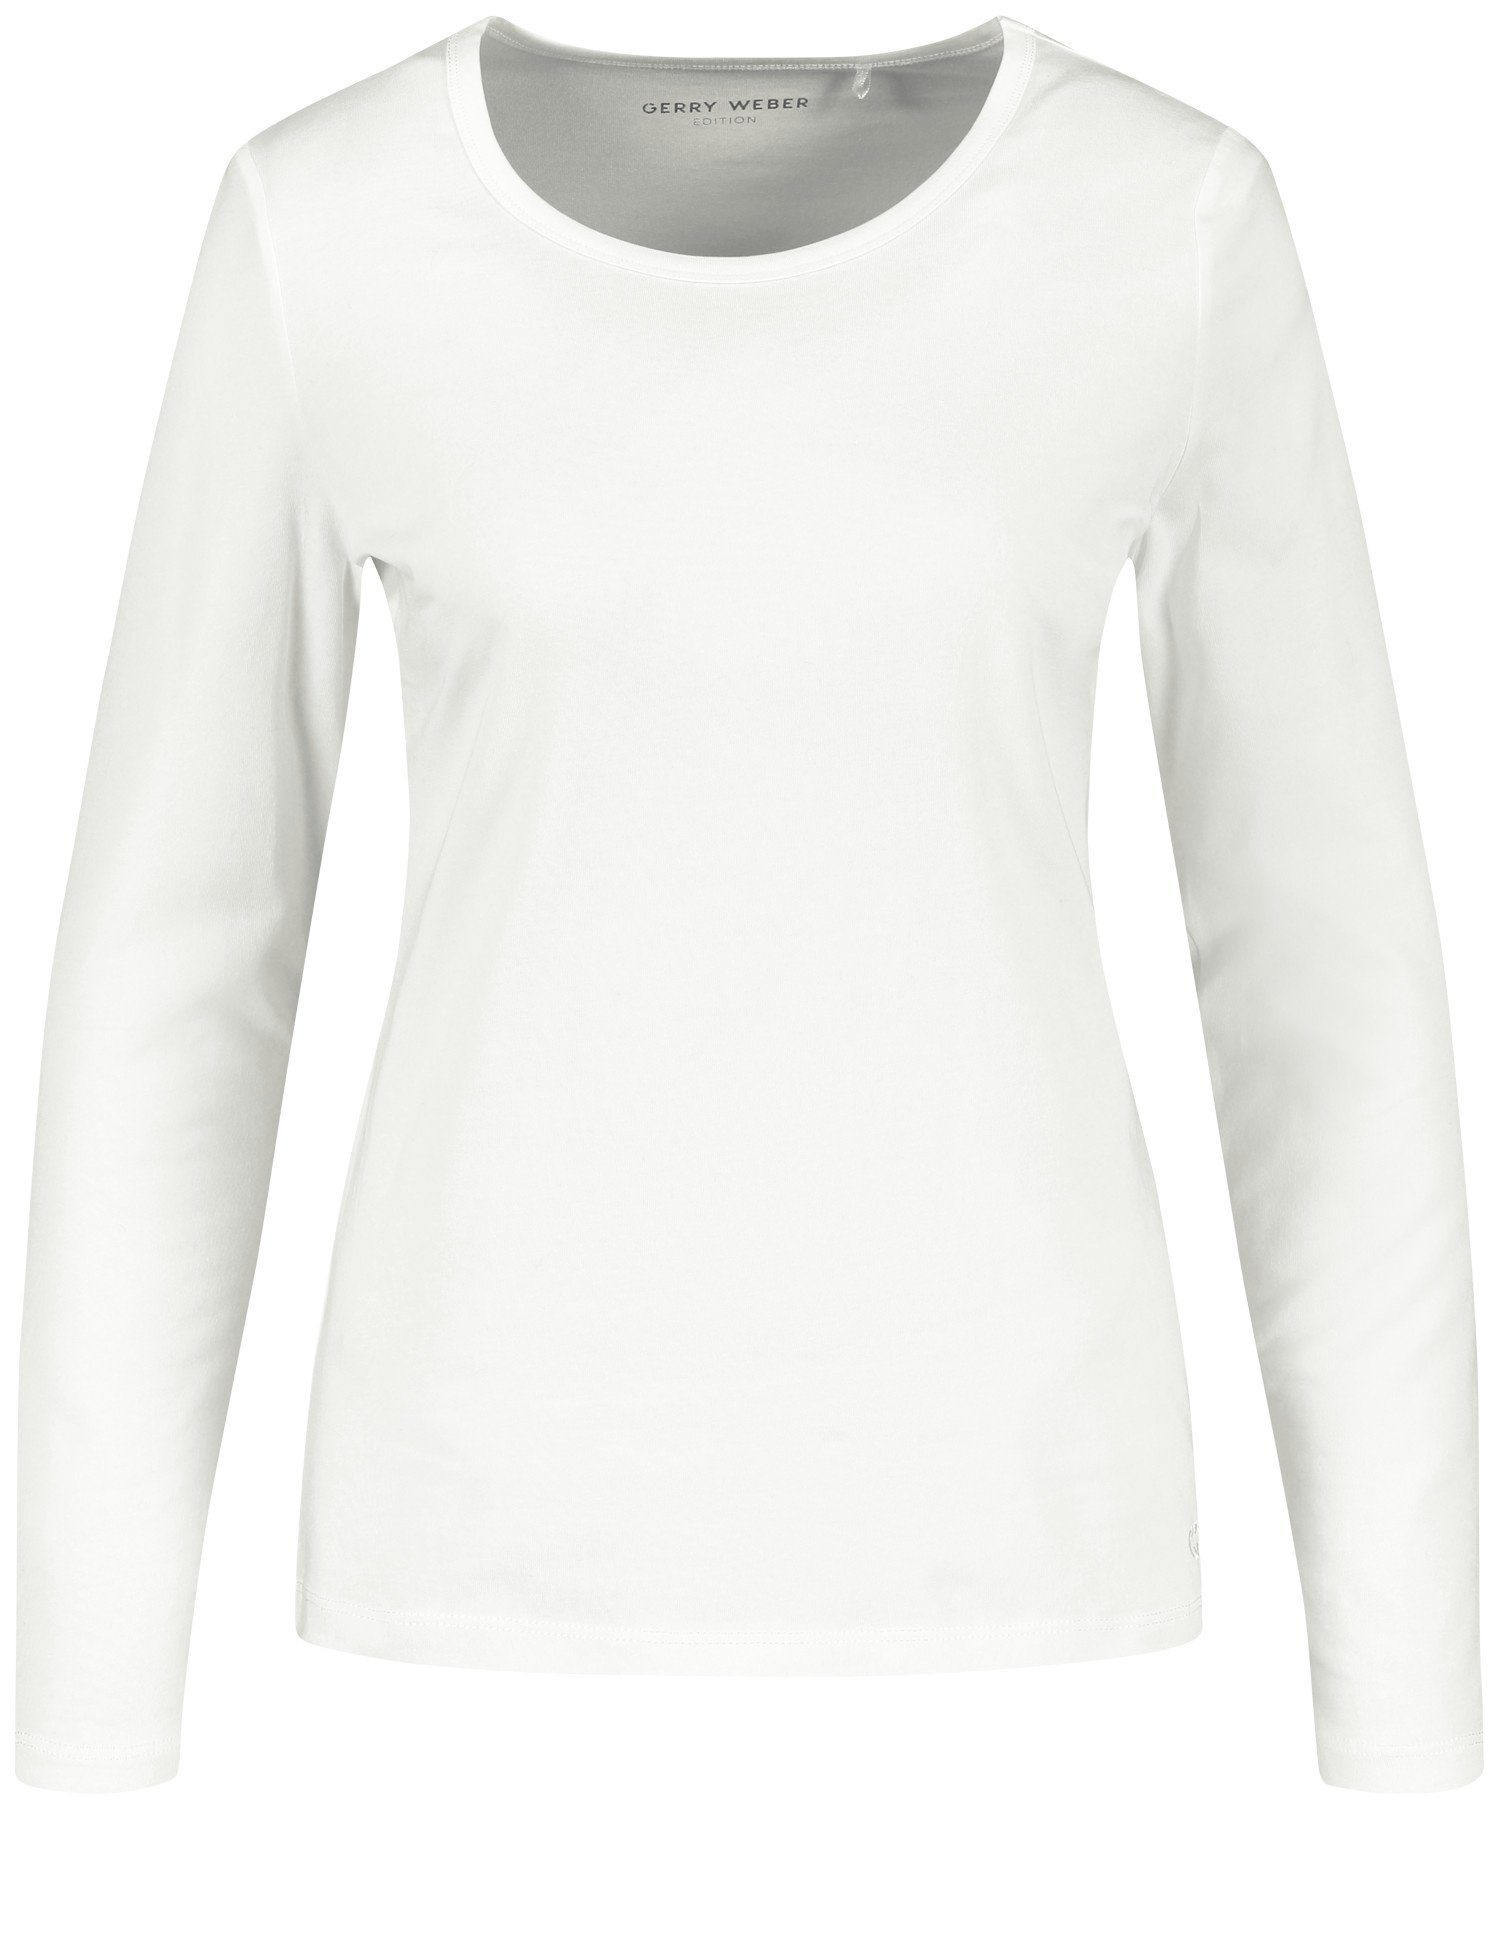 Off-white WEBER GERRY Langarmshirt Langarmshirt mit Stretchkomfort Basic